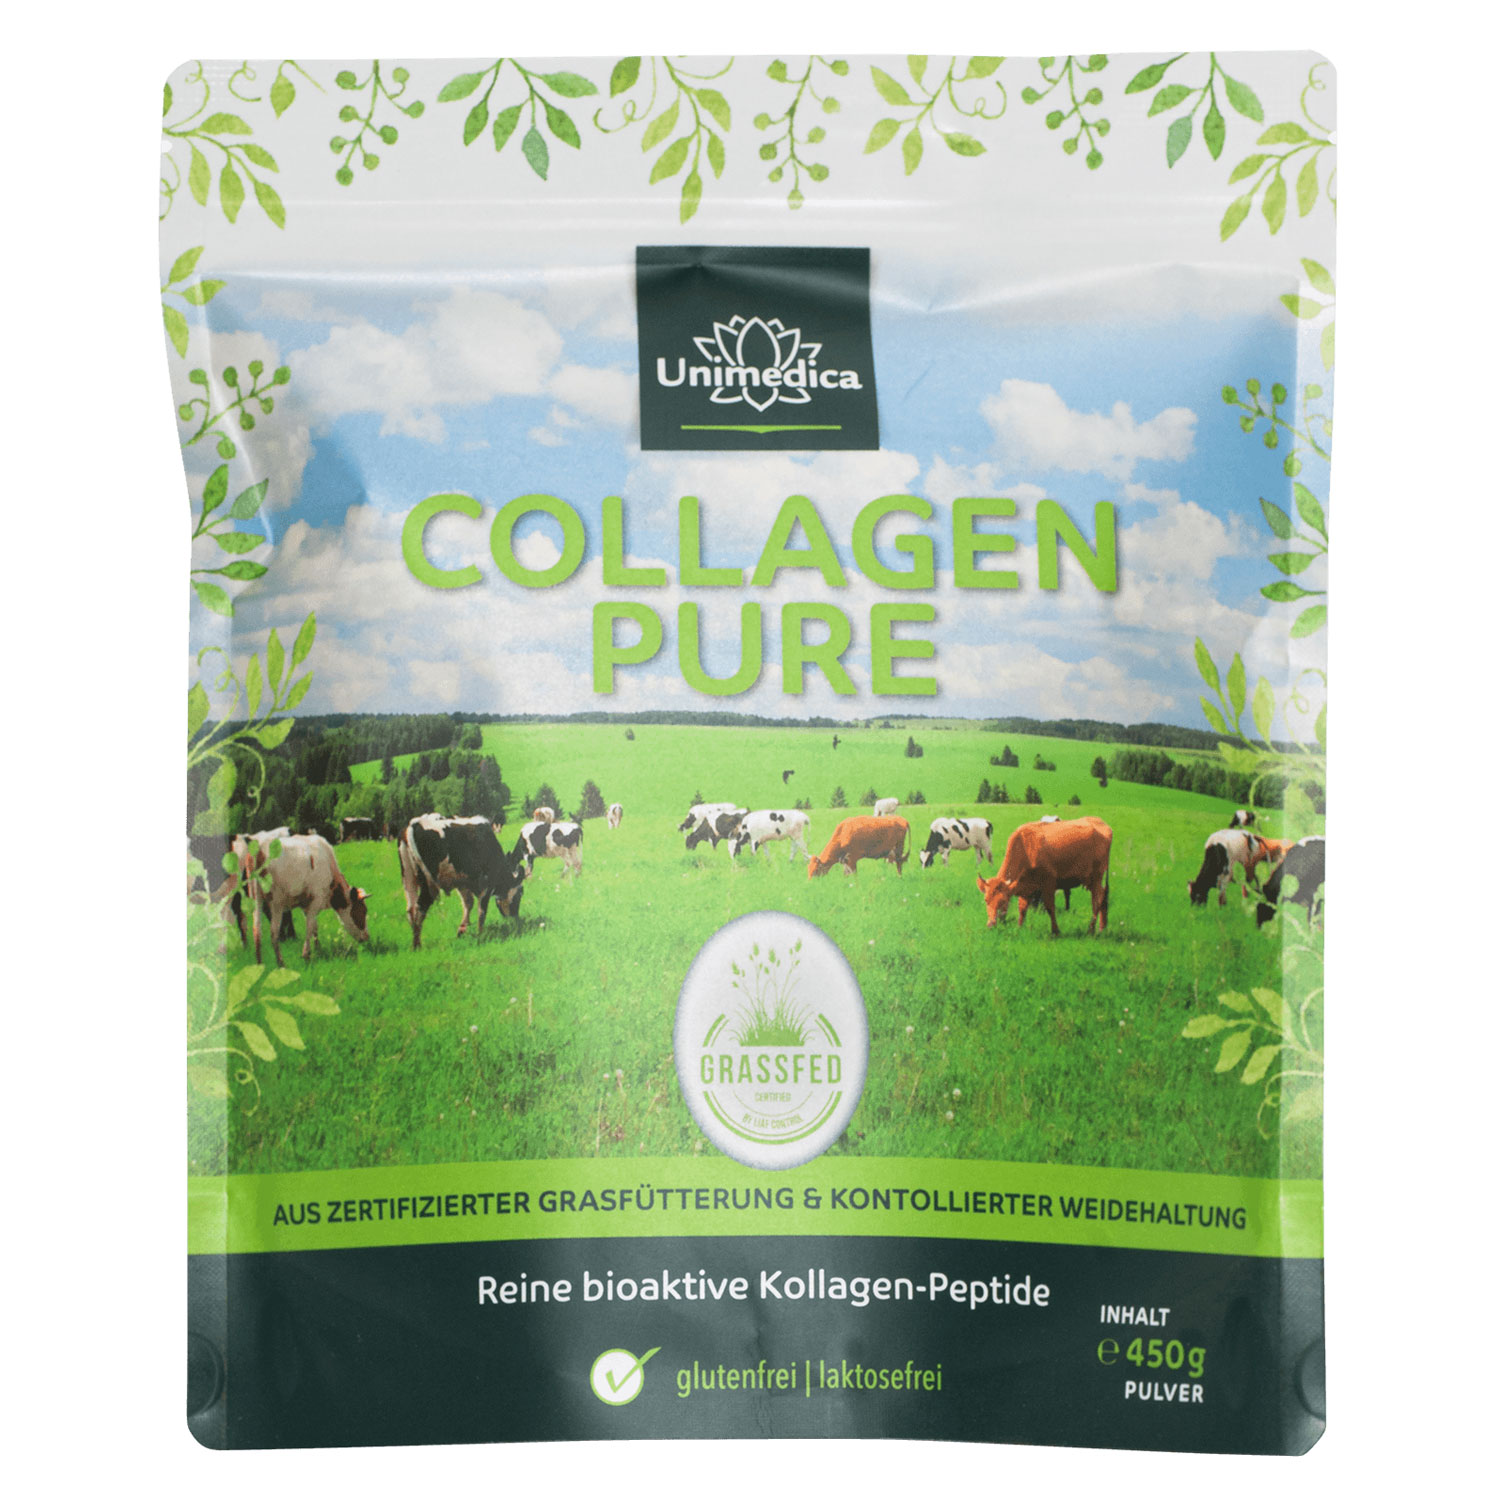 Collagen Pure von Unimedica - 450g